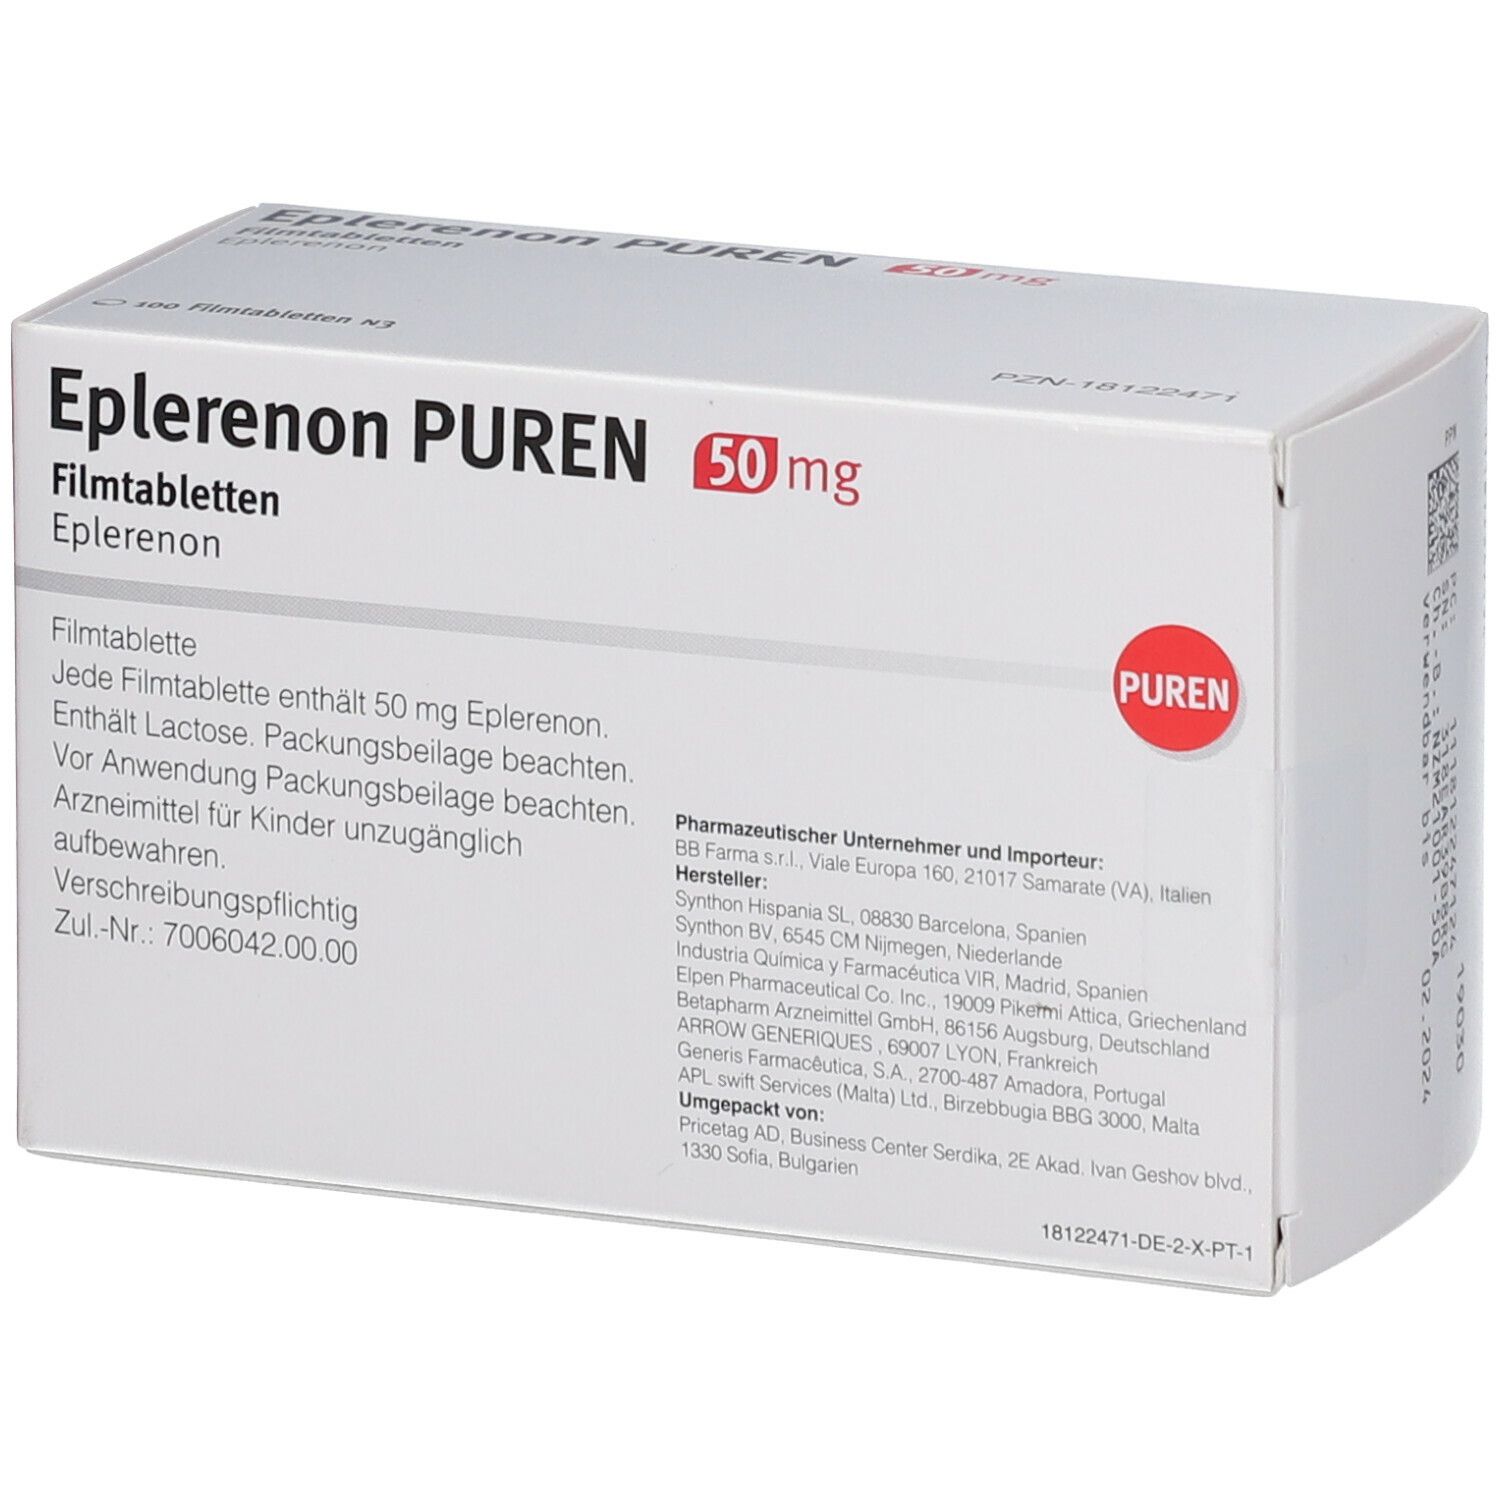 EPLERENON PUREN 50 mg Filmtabletten